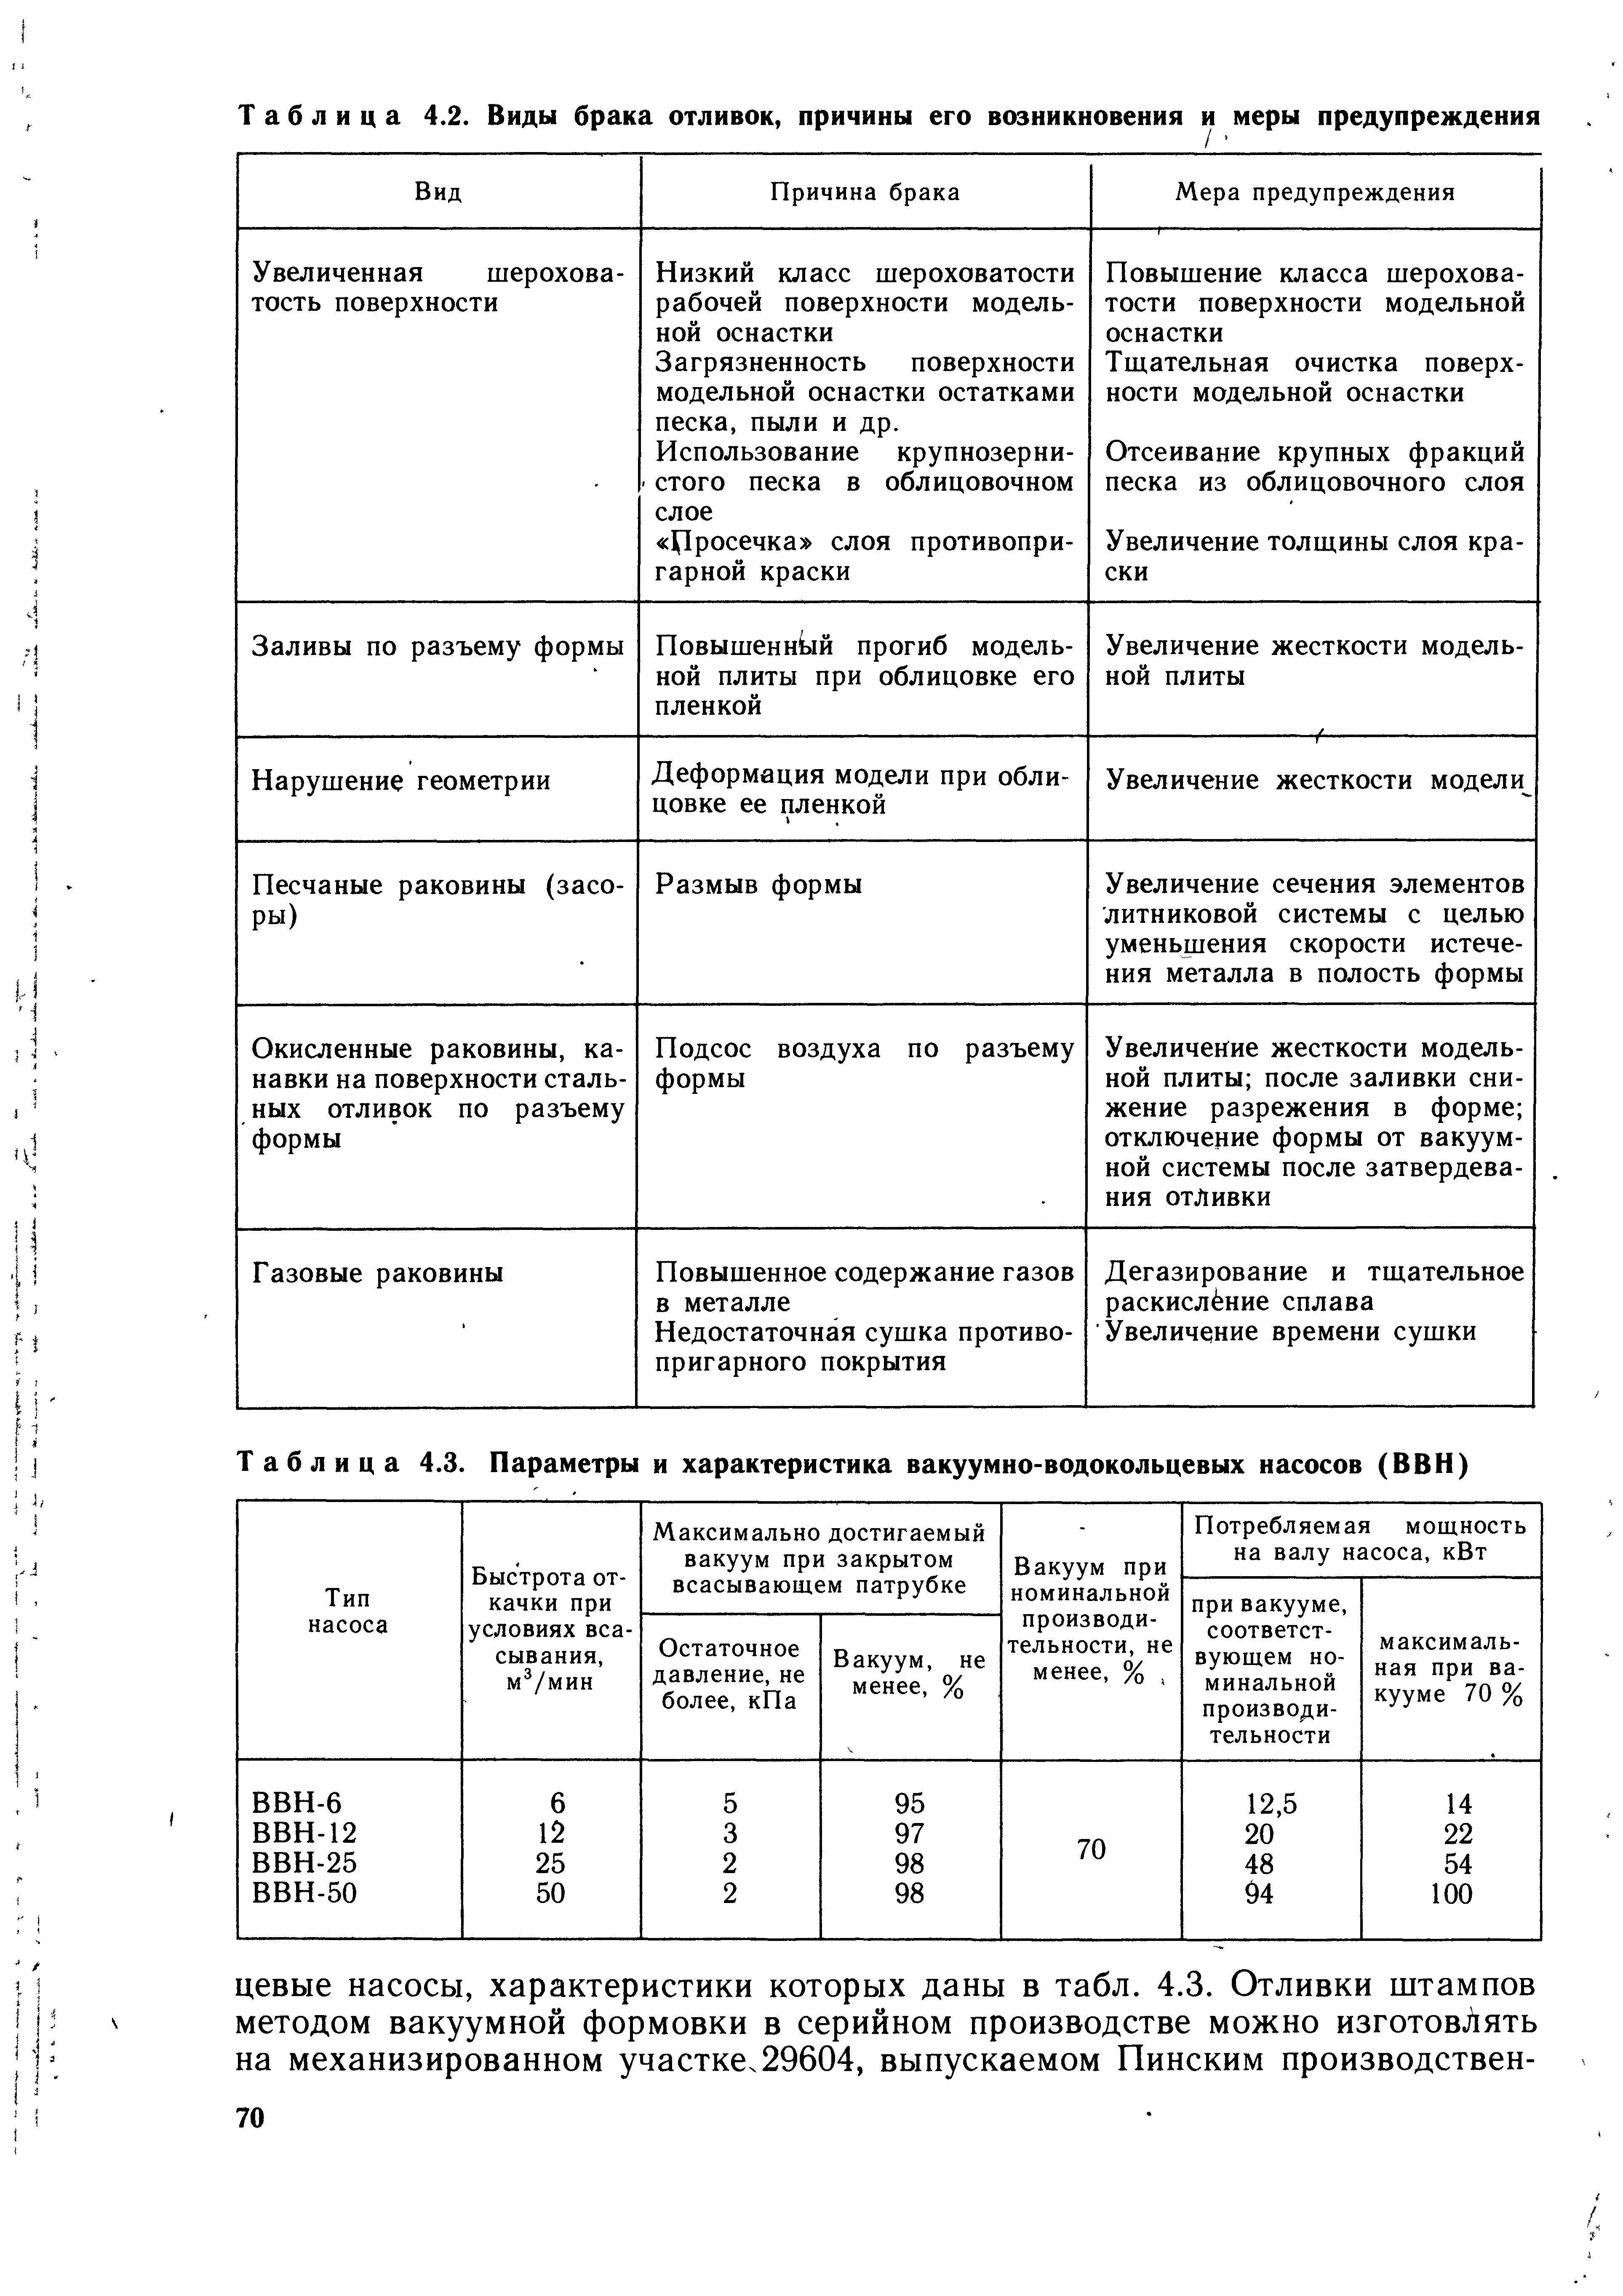 Таблица 4.3. Параметры и характеристика вакуумно-водокольцевых насосов (ВВН)
